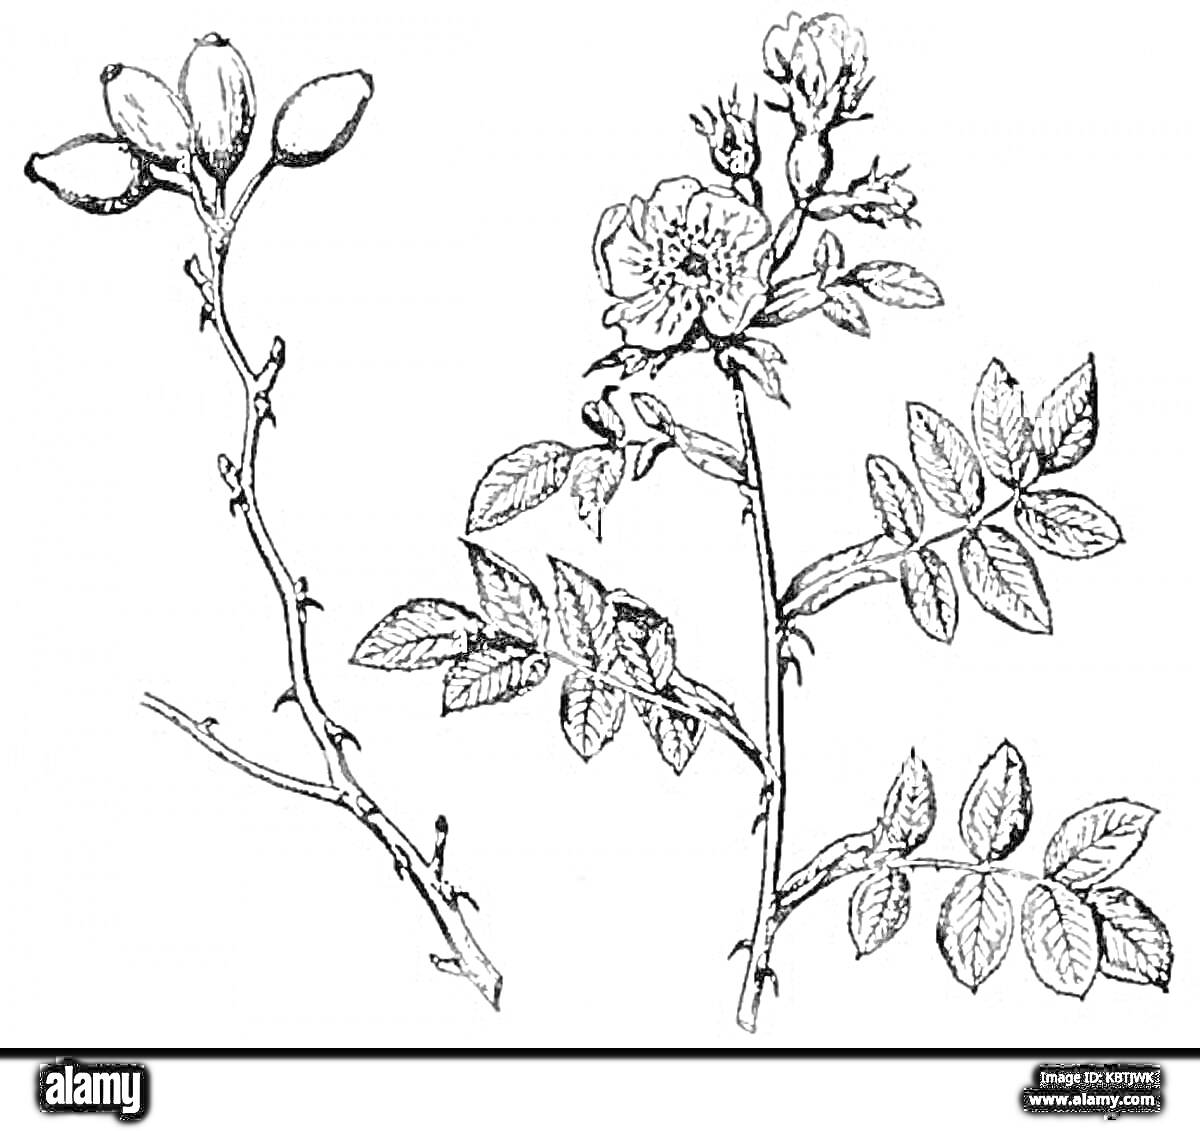 Раскраска Ветви шиповника с листьями и цветами